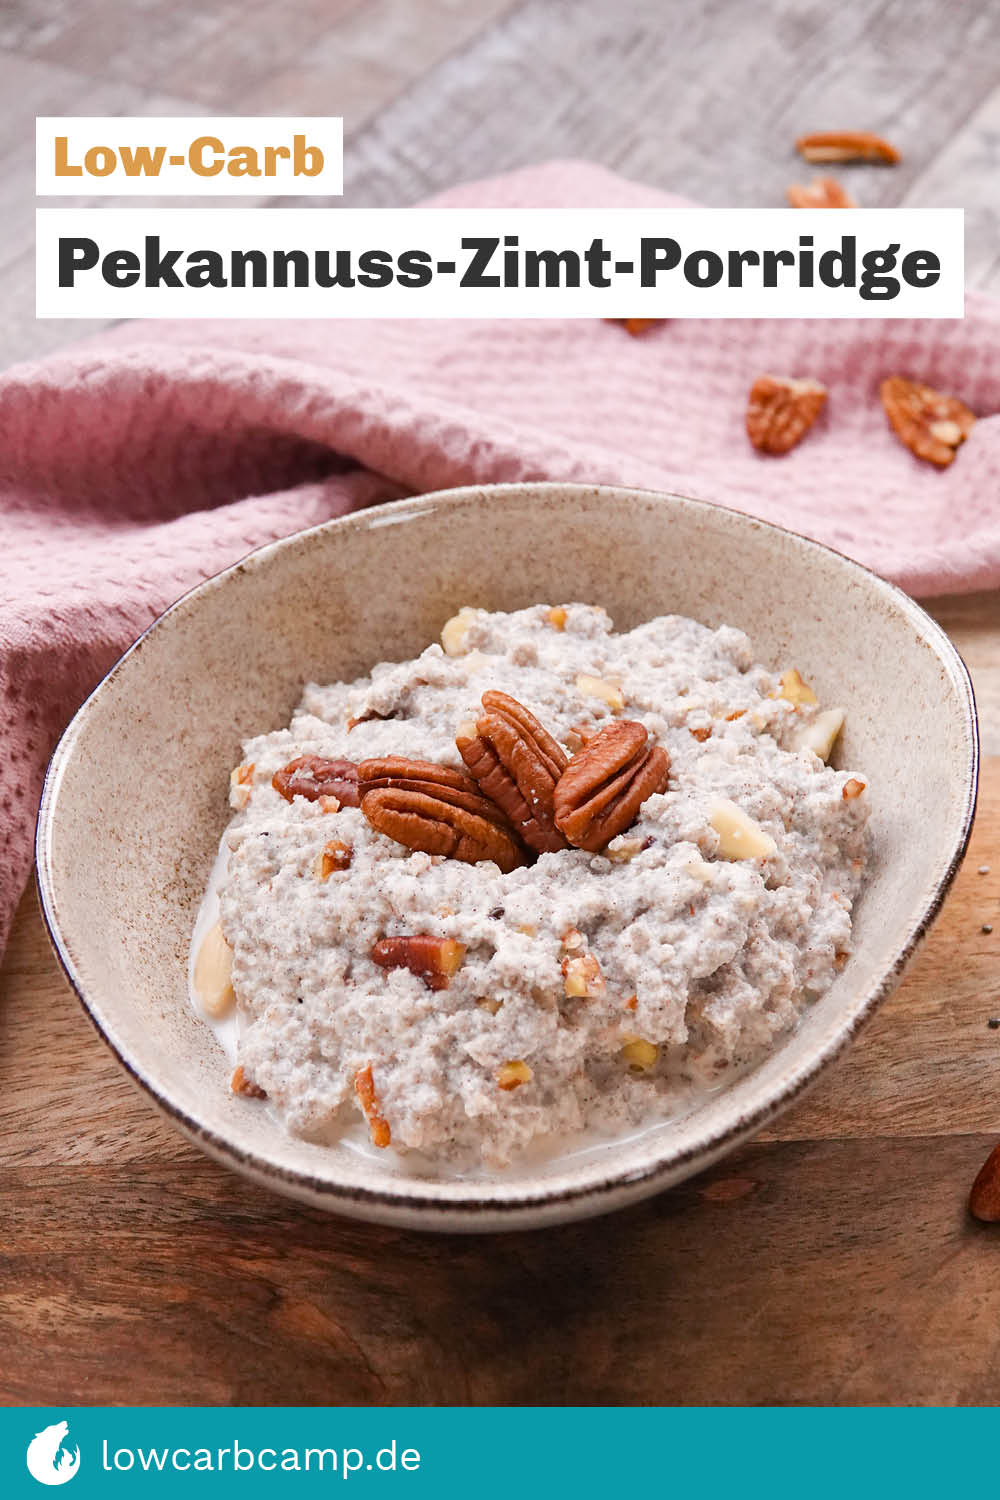 Pekannuss-Zimt-Porridge